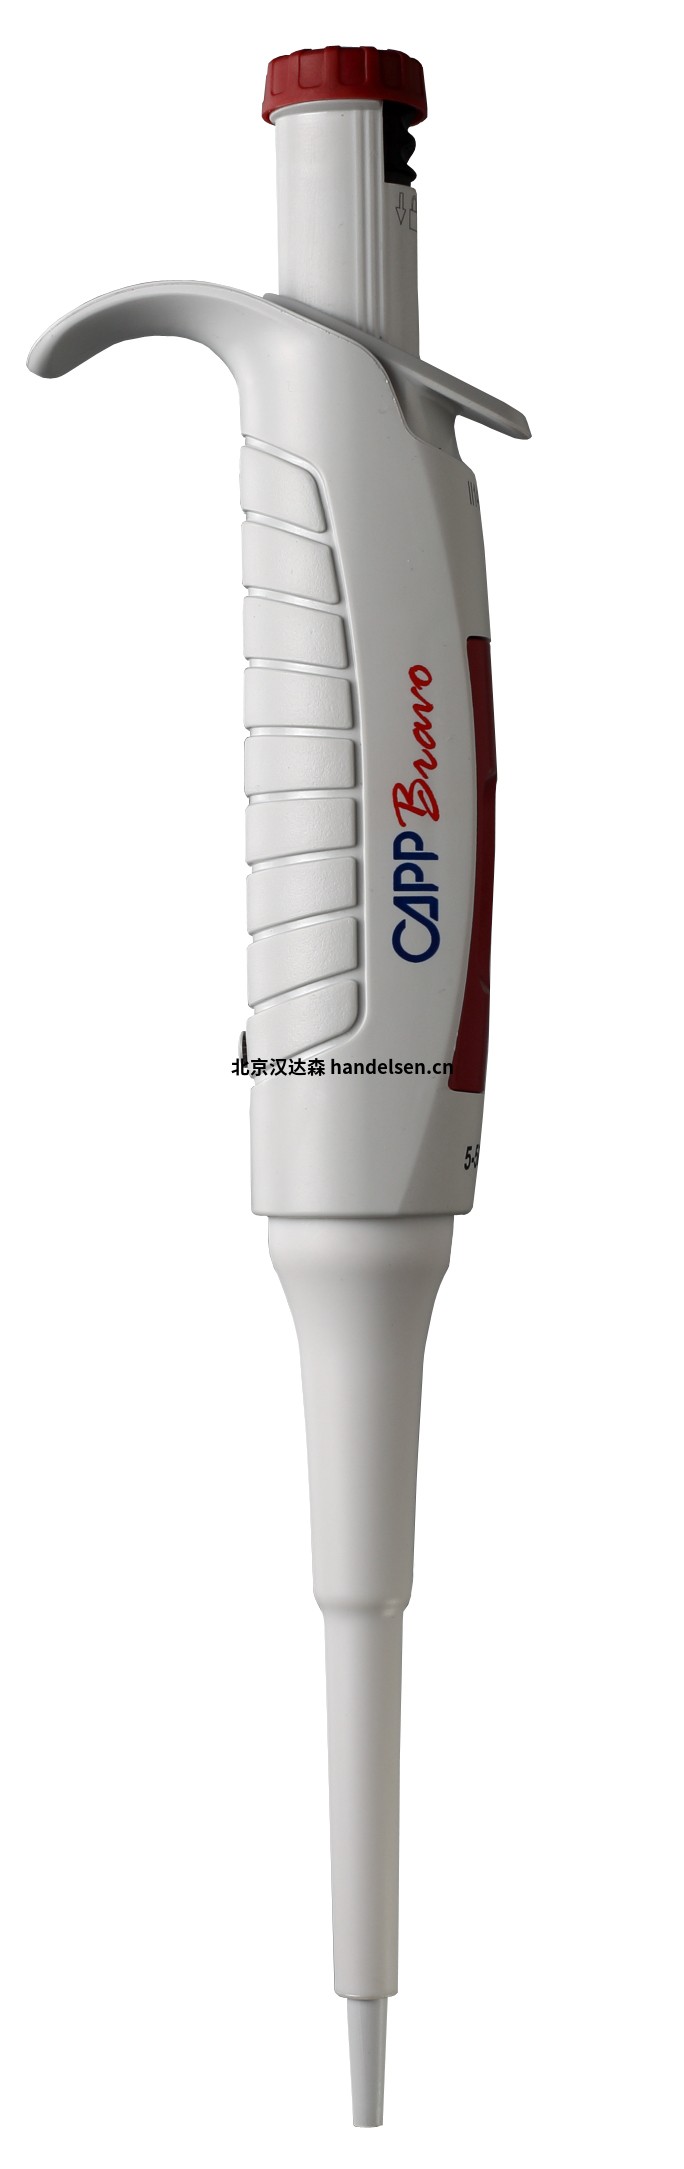 进口品牌CAPPBravo移液器型号B02-1